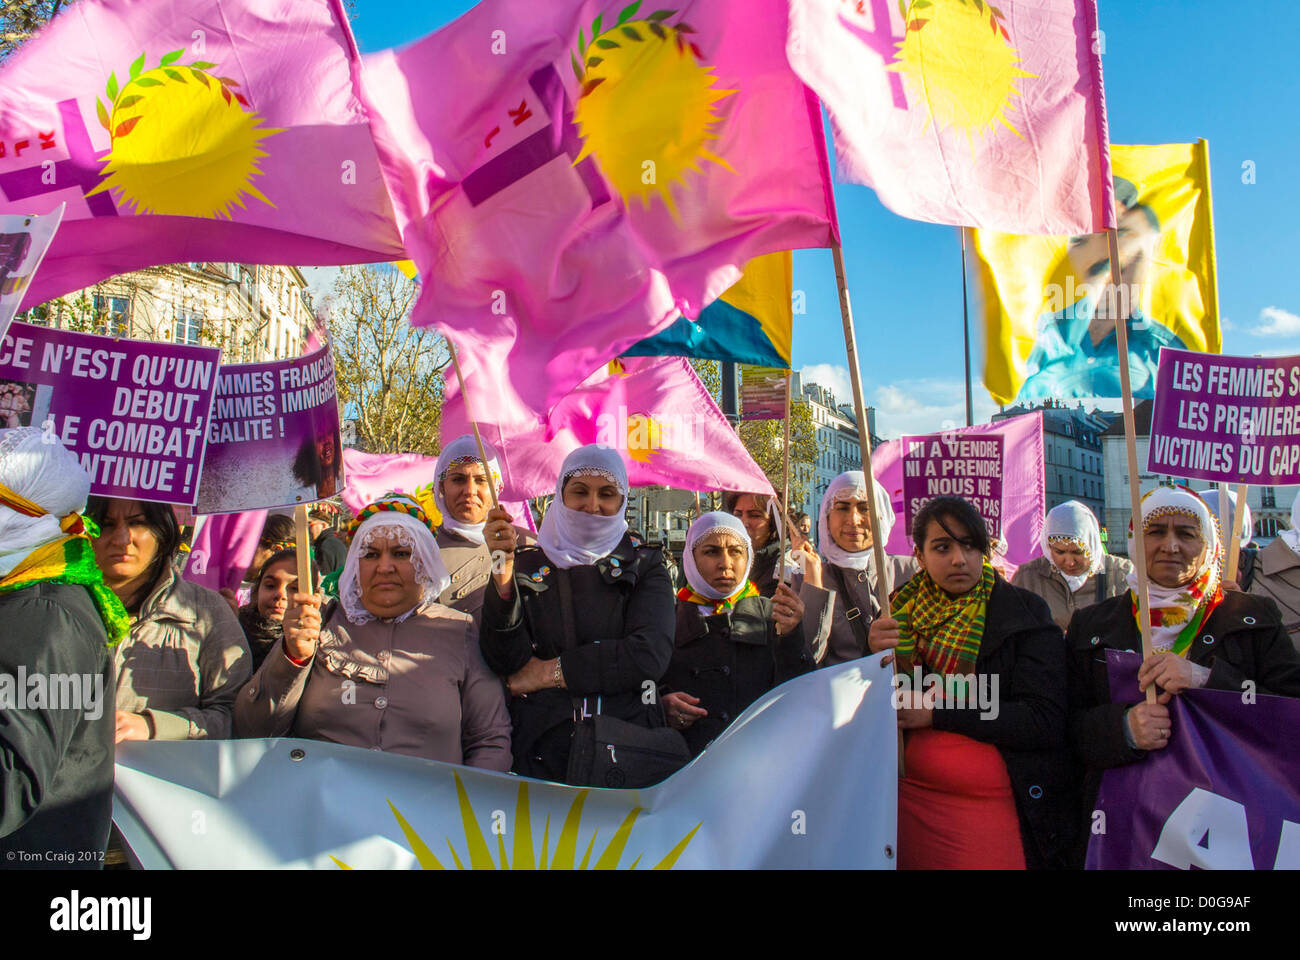 Paris, France, différents groupes féministes ont organisé une marche contre la violence envers les femmes, Journée internationale des droits de la femme, égalité, People 8 march Street, protestation contre les droits des femmes migrantes, femmes kurdes, france musulmane Banque D'Images